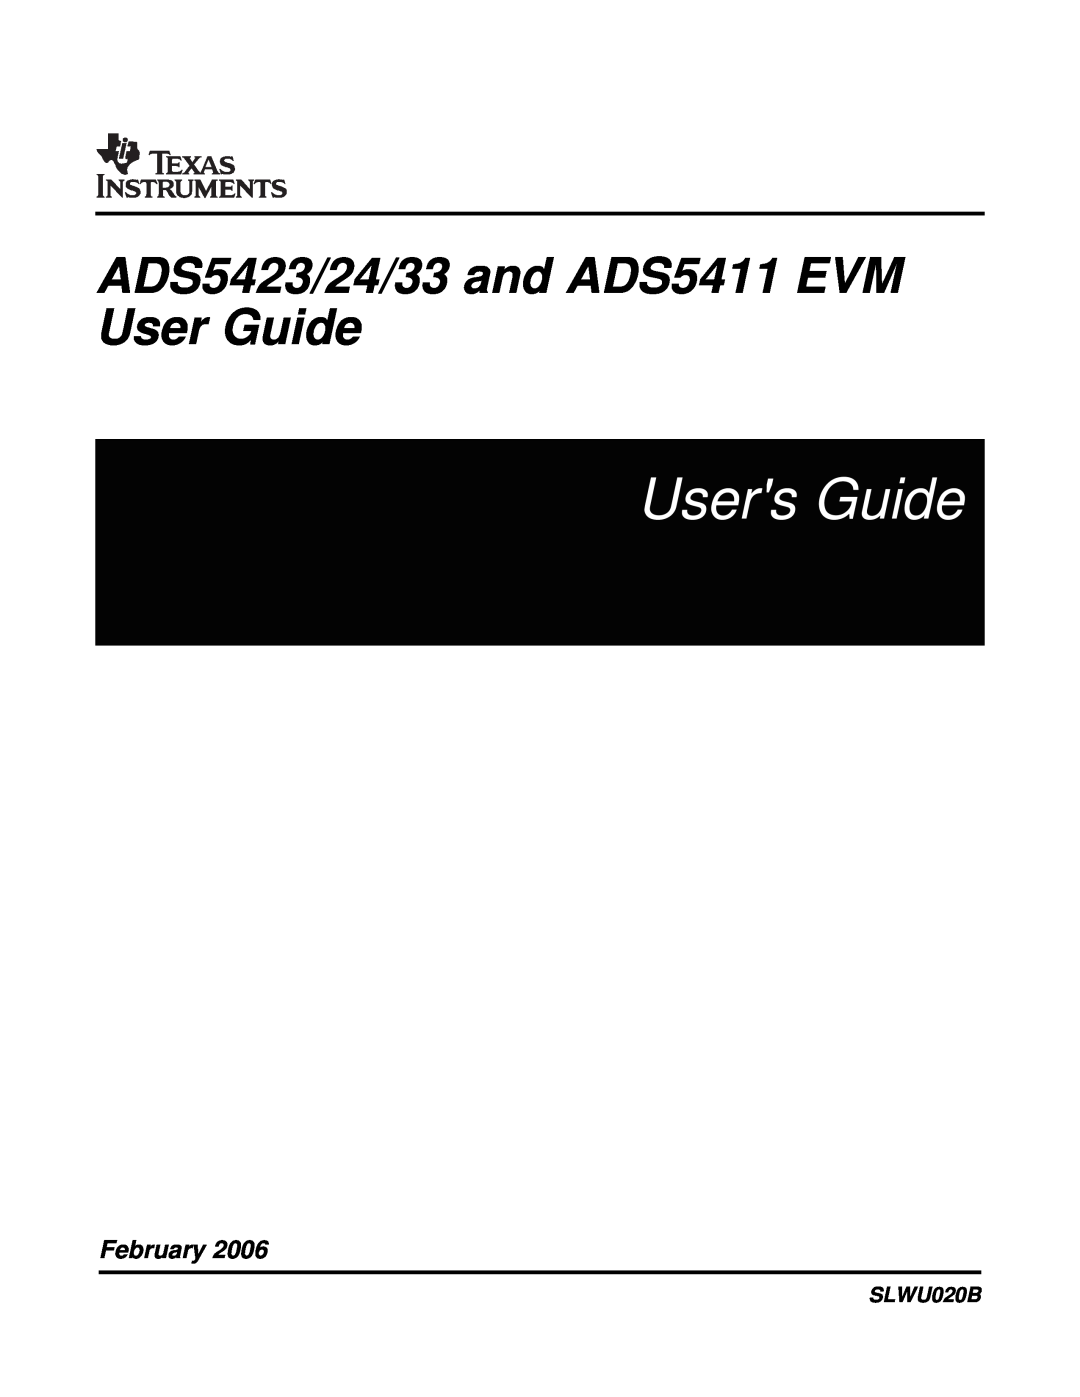 Texas Instruments ADS5423 EVM, ADS5424 EVM, ADS5433 EVM, ADS5411 EVM manual Users Guide, February, SLWU020B 